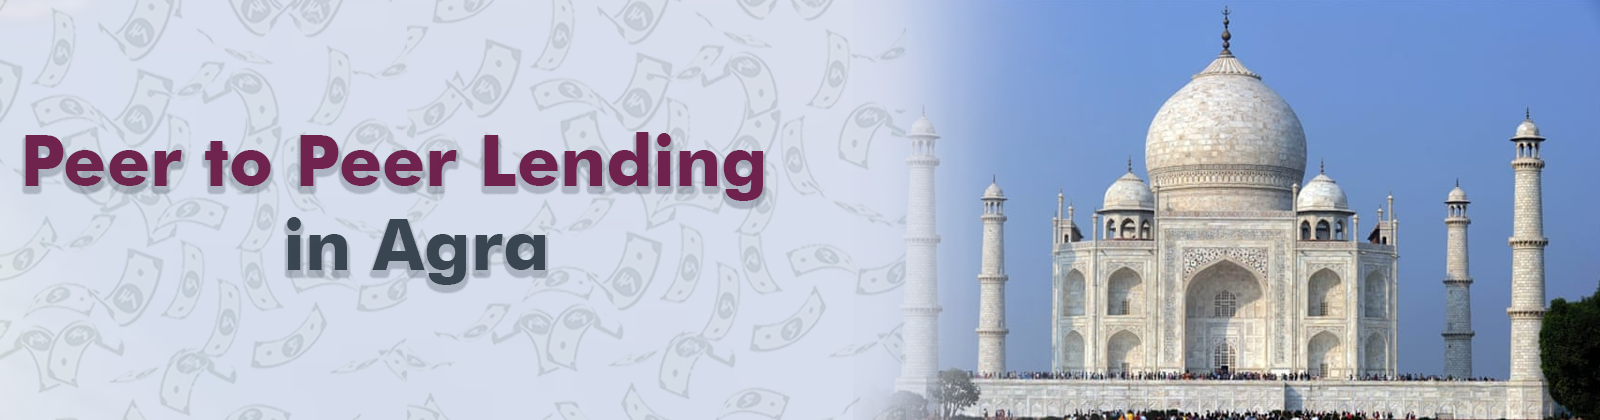 Peer to Peer Lending in Agra